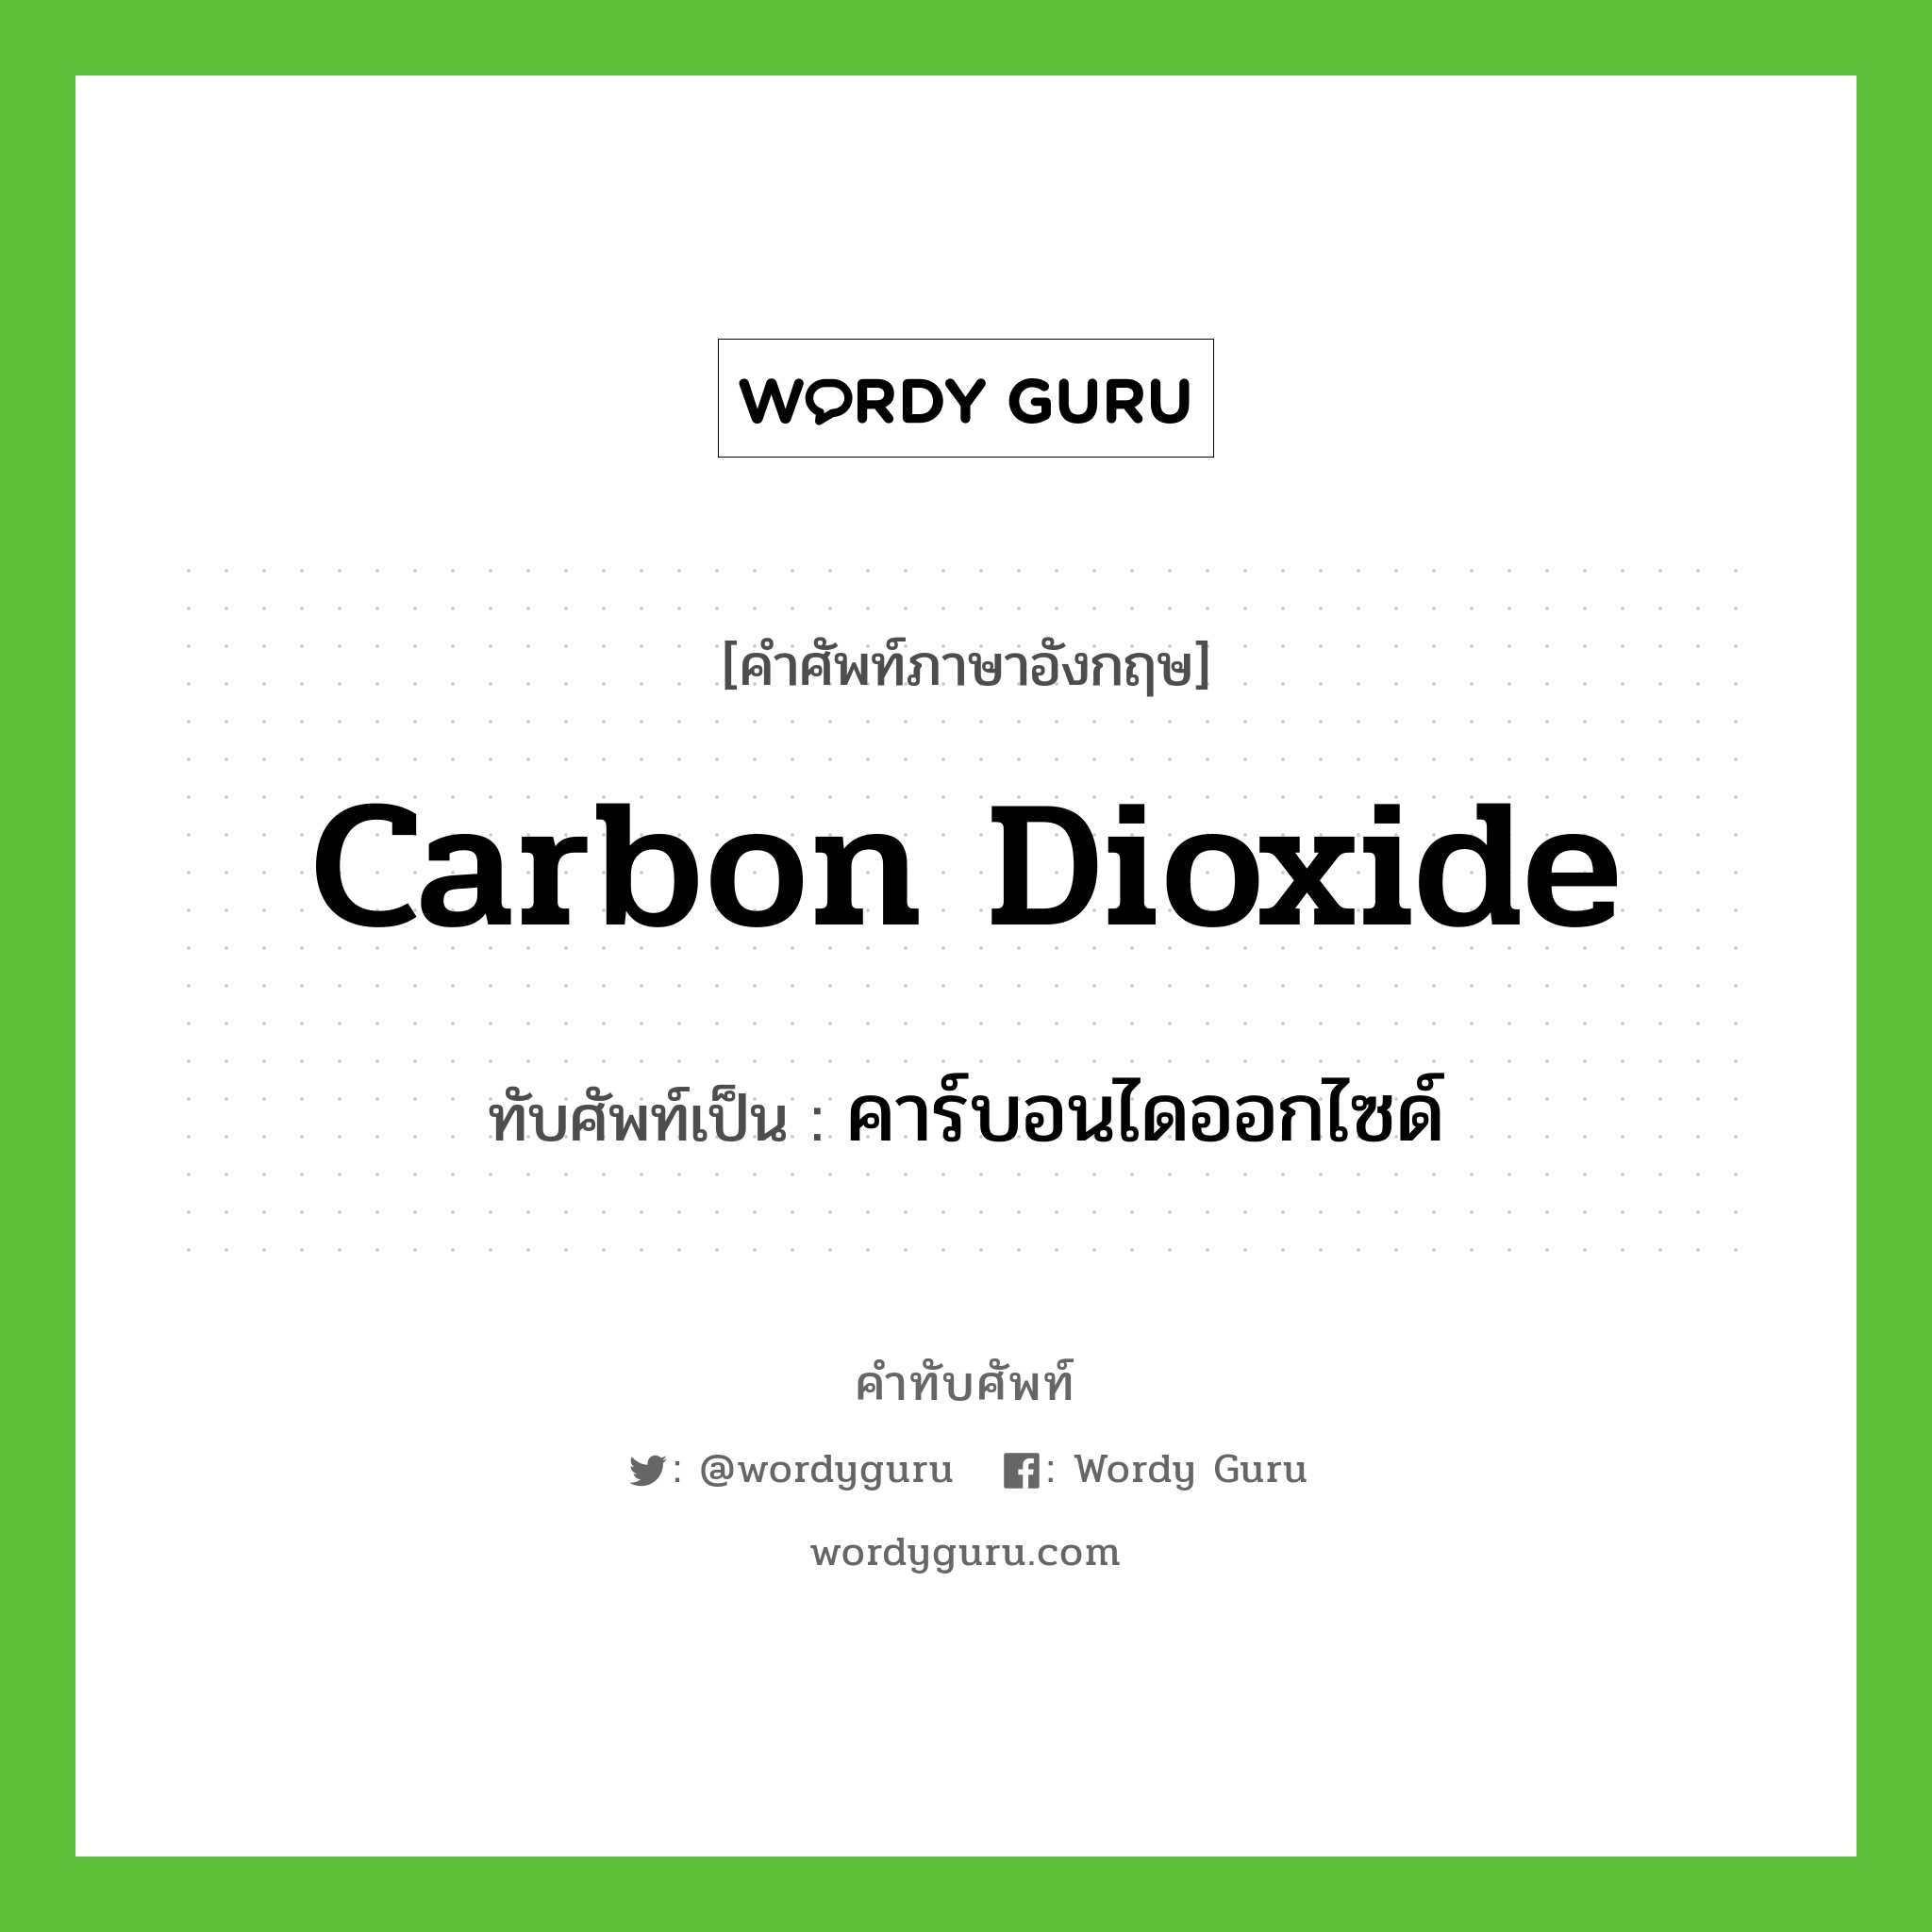 carbon dioxide เขียนเป็นคำไทยว่าอะไร?, คำศัพท์ภาษาอังกฤษ carbon dioxide ทับศัพท์เป็น คาร์บอนไดออกไซด์